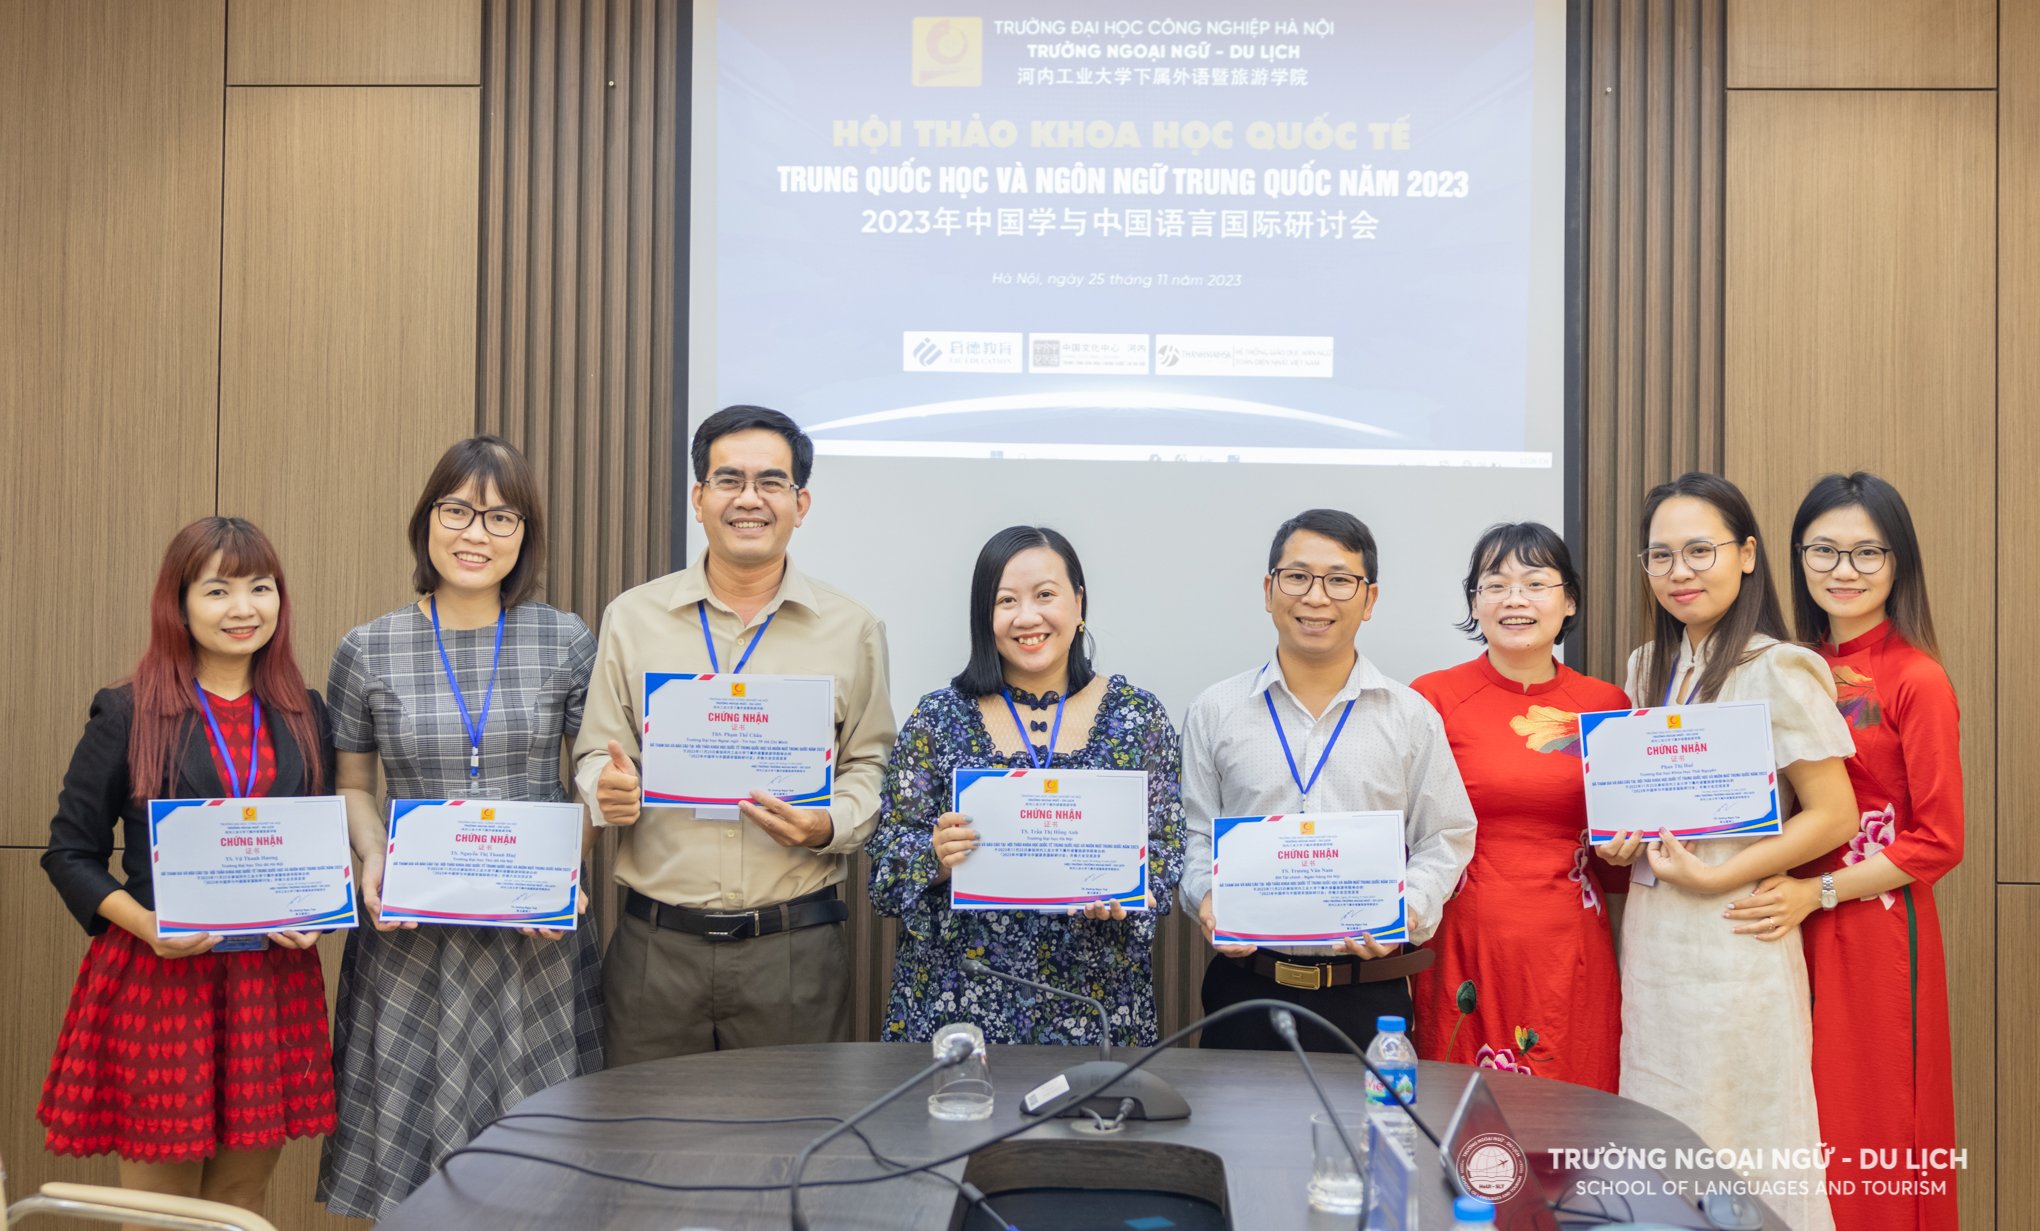 Hội thảo khoa học quốc tế Trung Quốc học và Ngôn ngữ Trung Quốc năm 2023